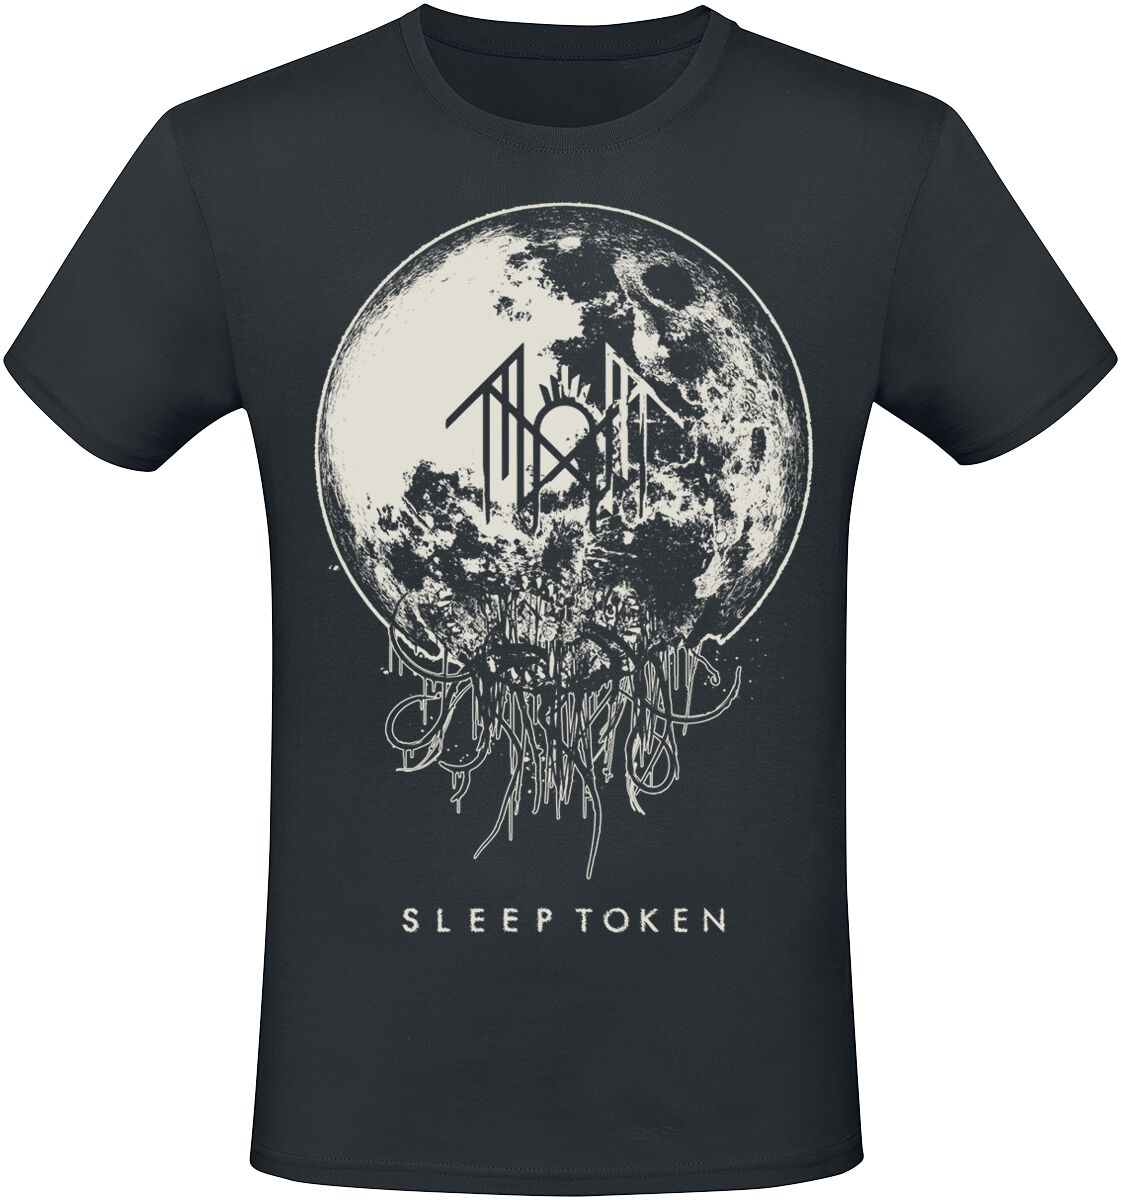 Sleep Token T-Shirt - Take Me Back To Eden - S bis 4XL - für Männer - Größe L - schwarz  - EMP exklusives Merchandise!